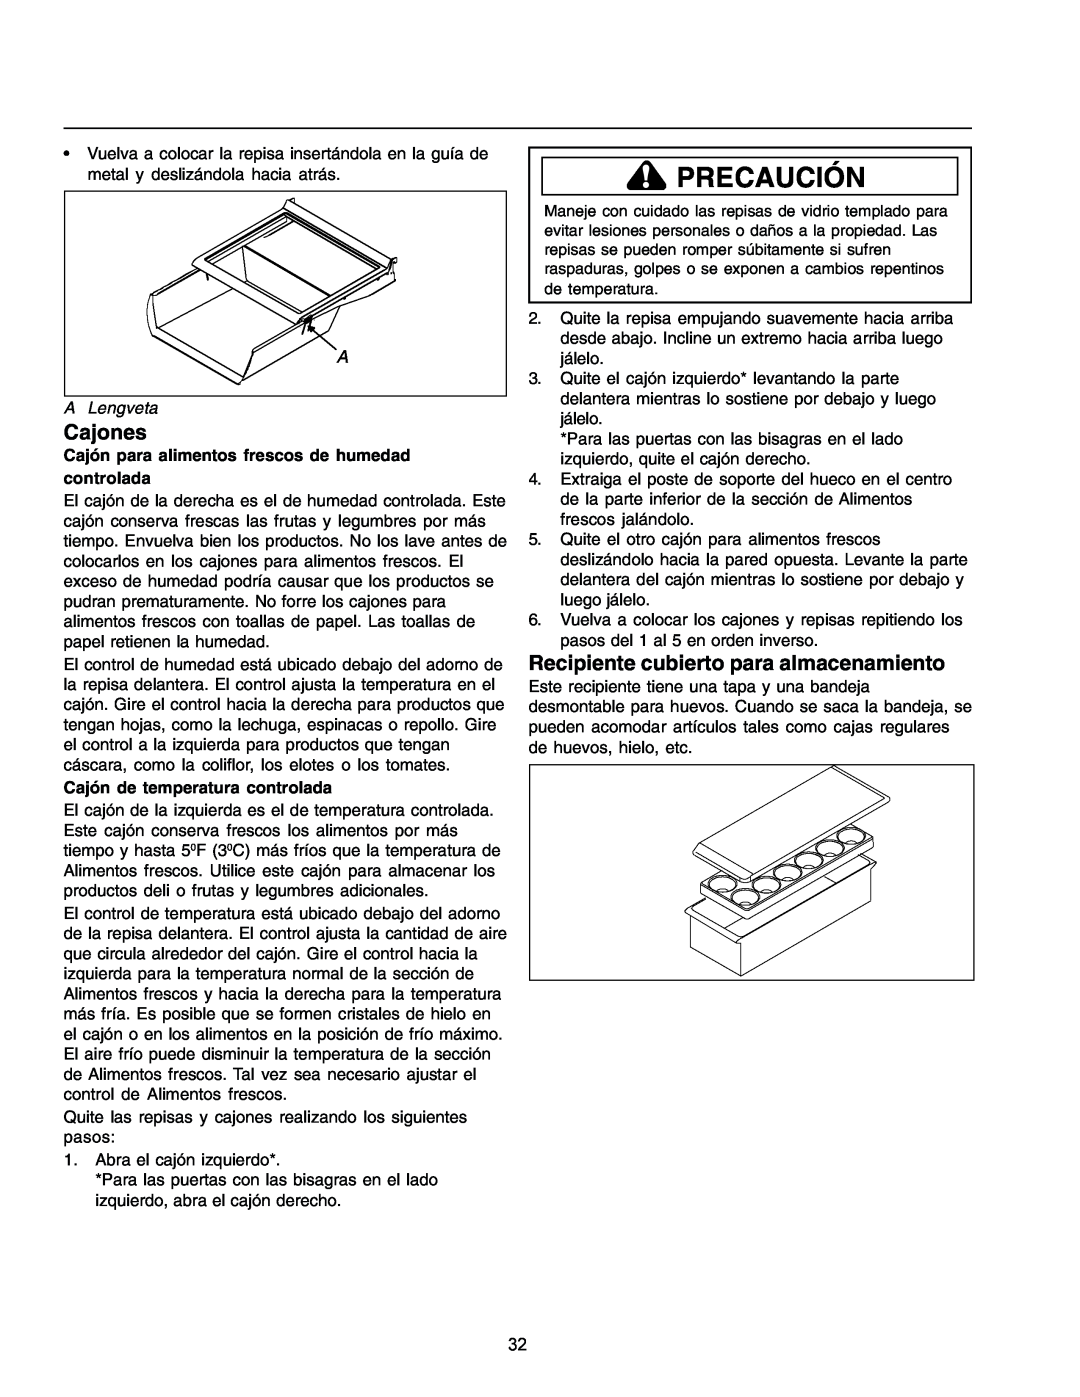 Amana IA 52204-0001 Cajones, Recipiente cubierto para almacenamiento, Cajón de temperatura controlada, Precaución 